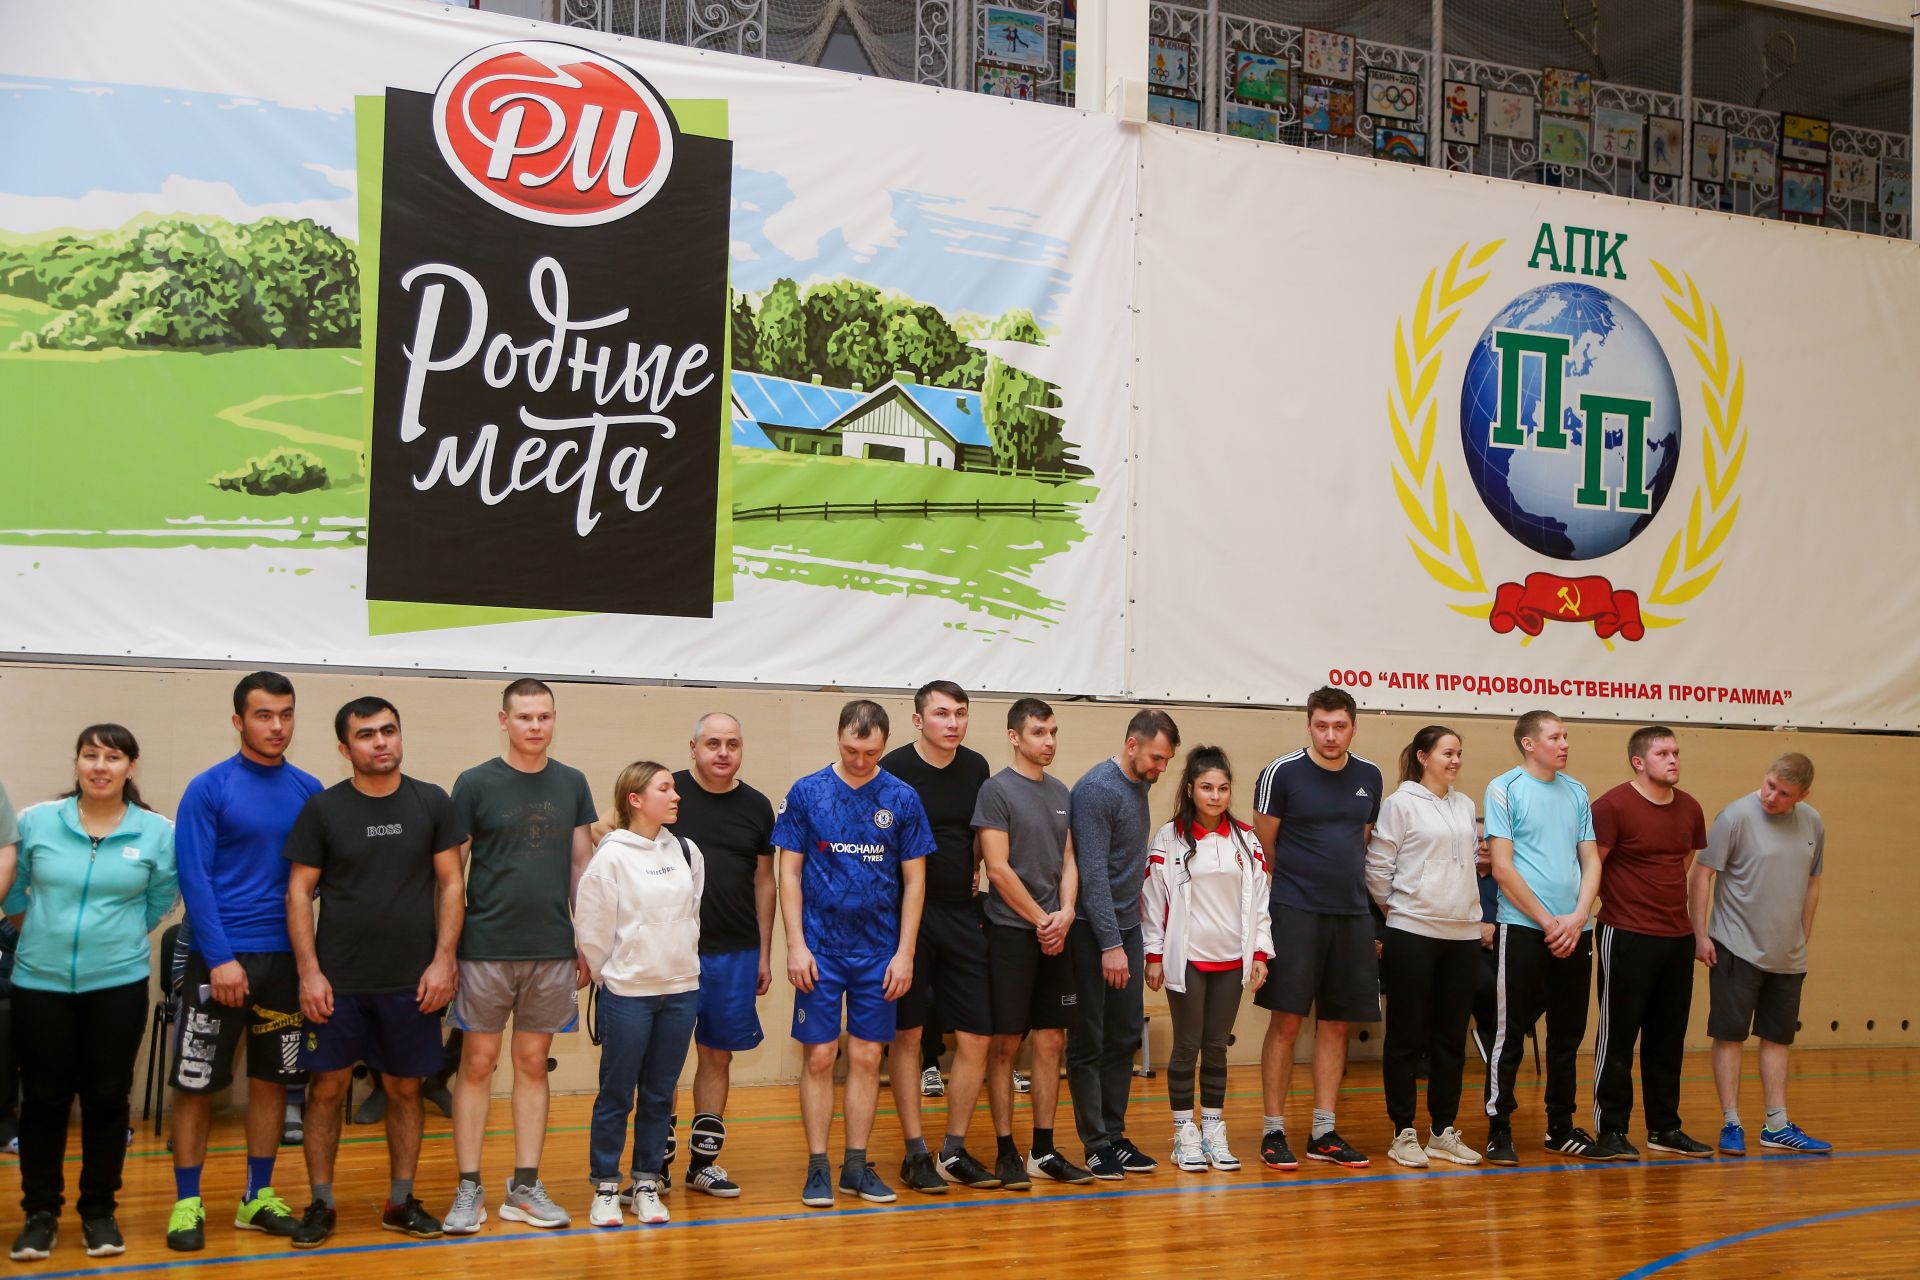 Соревнования по волейболу среди команд Группы компаний "РМ Агро"